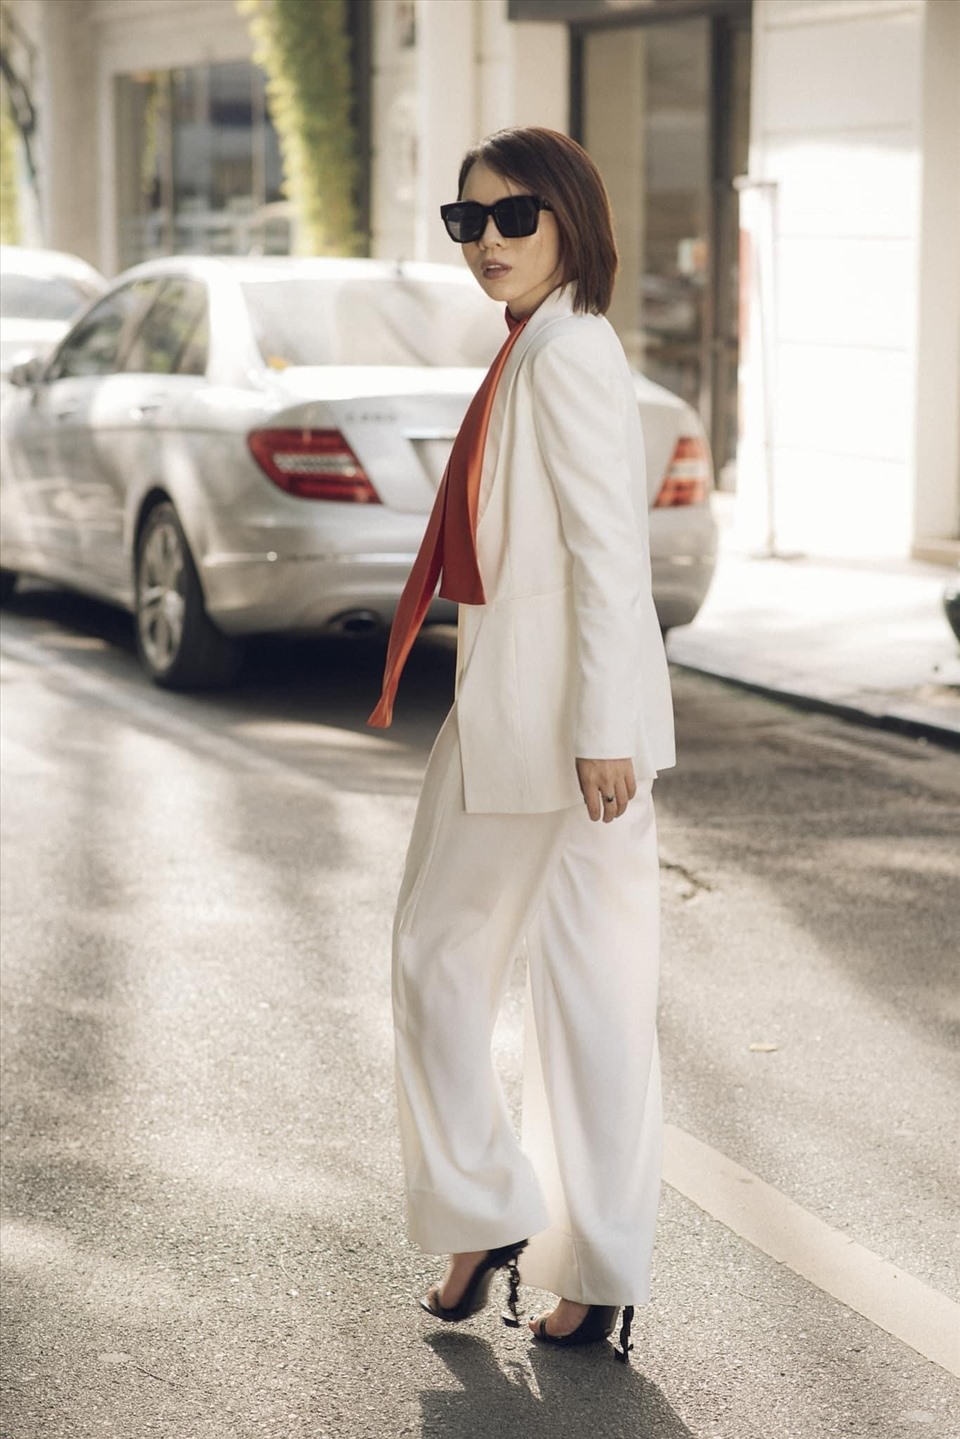 Cana Hoàng – nữ doanh nhân thành công trong lĩnh vực thời trang.